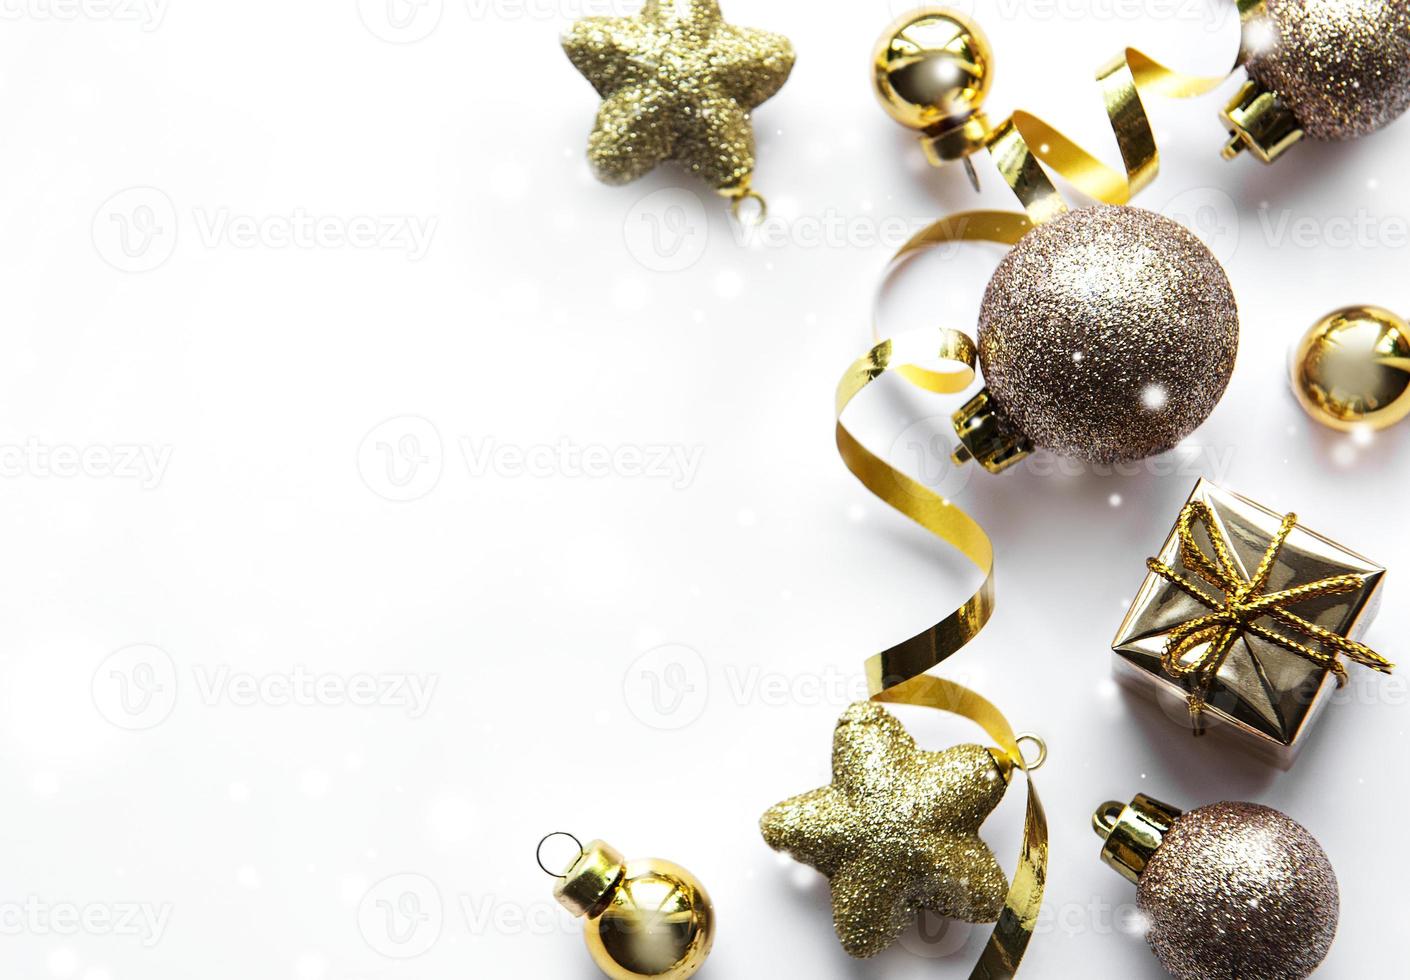 sfondo bianco festivo con decorazioni natalizie in oro foto